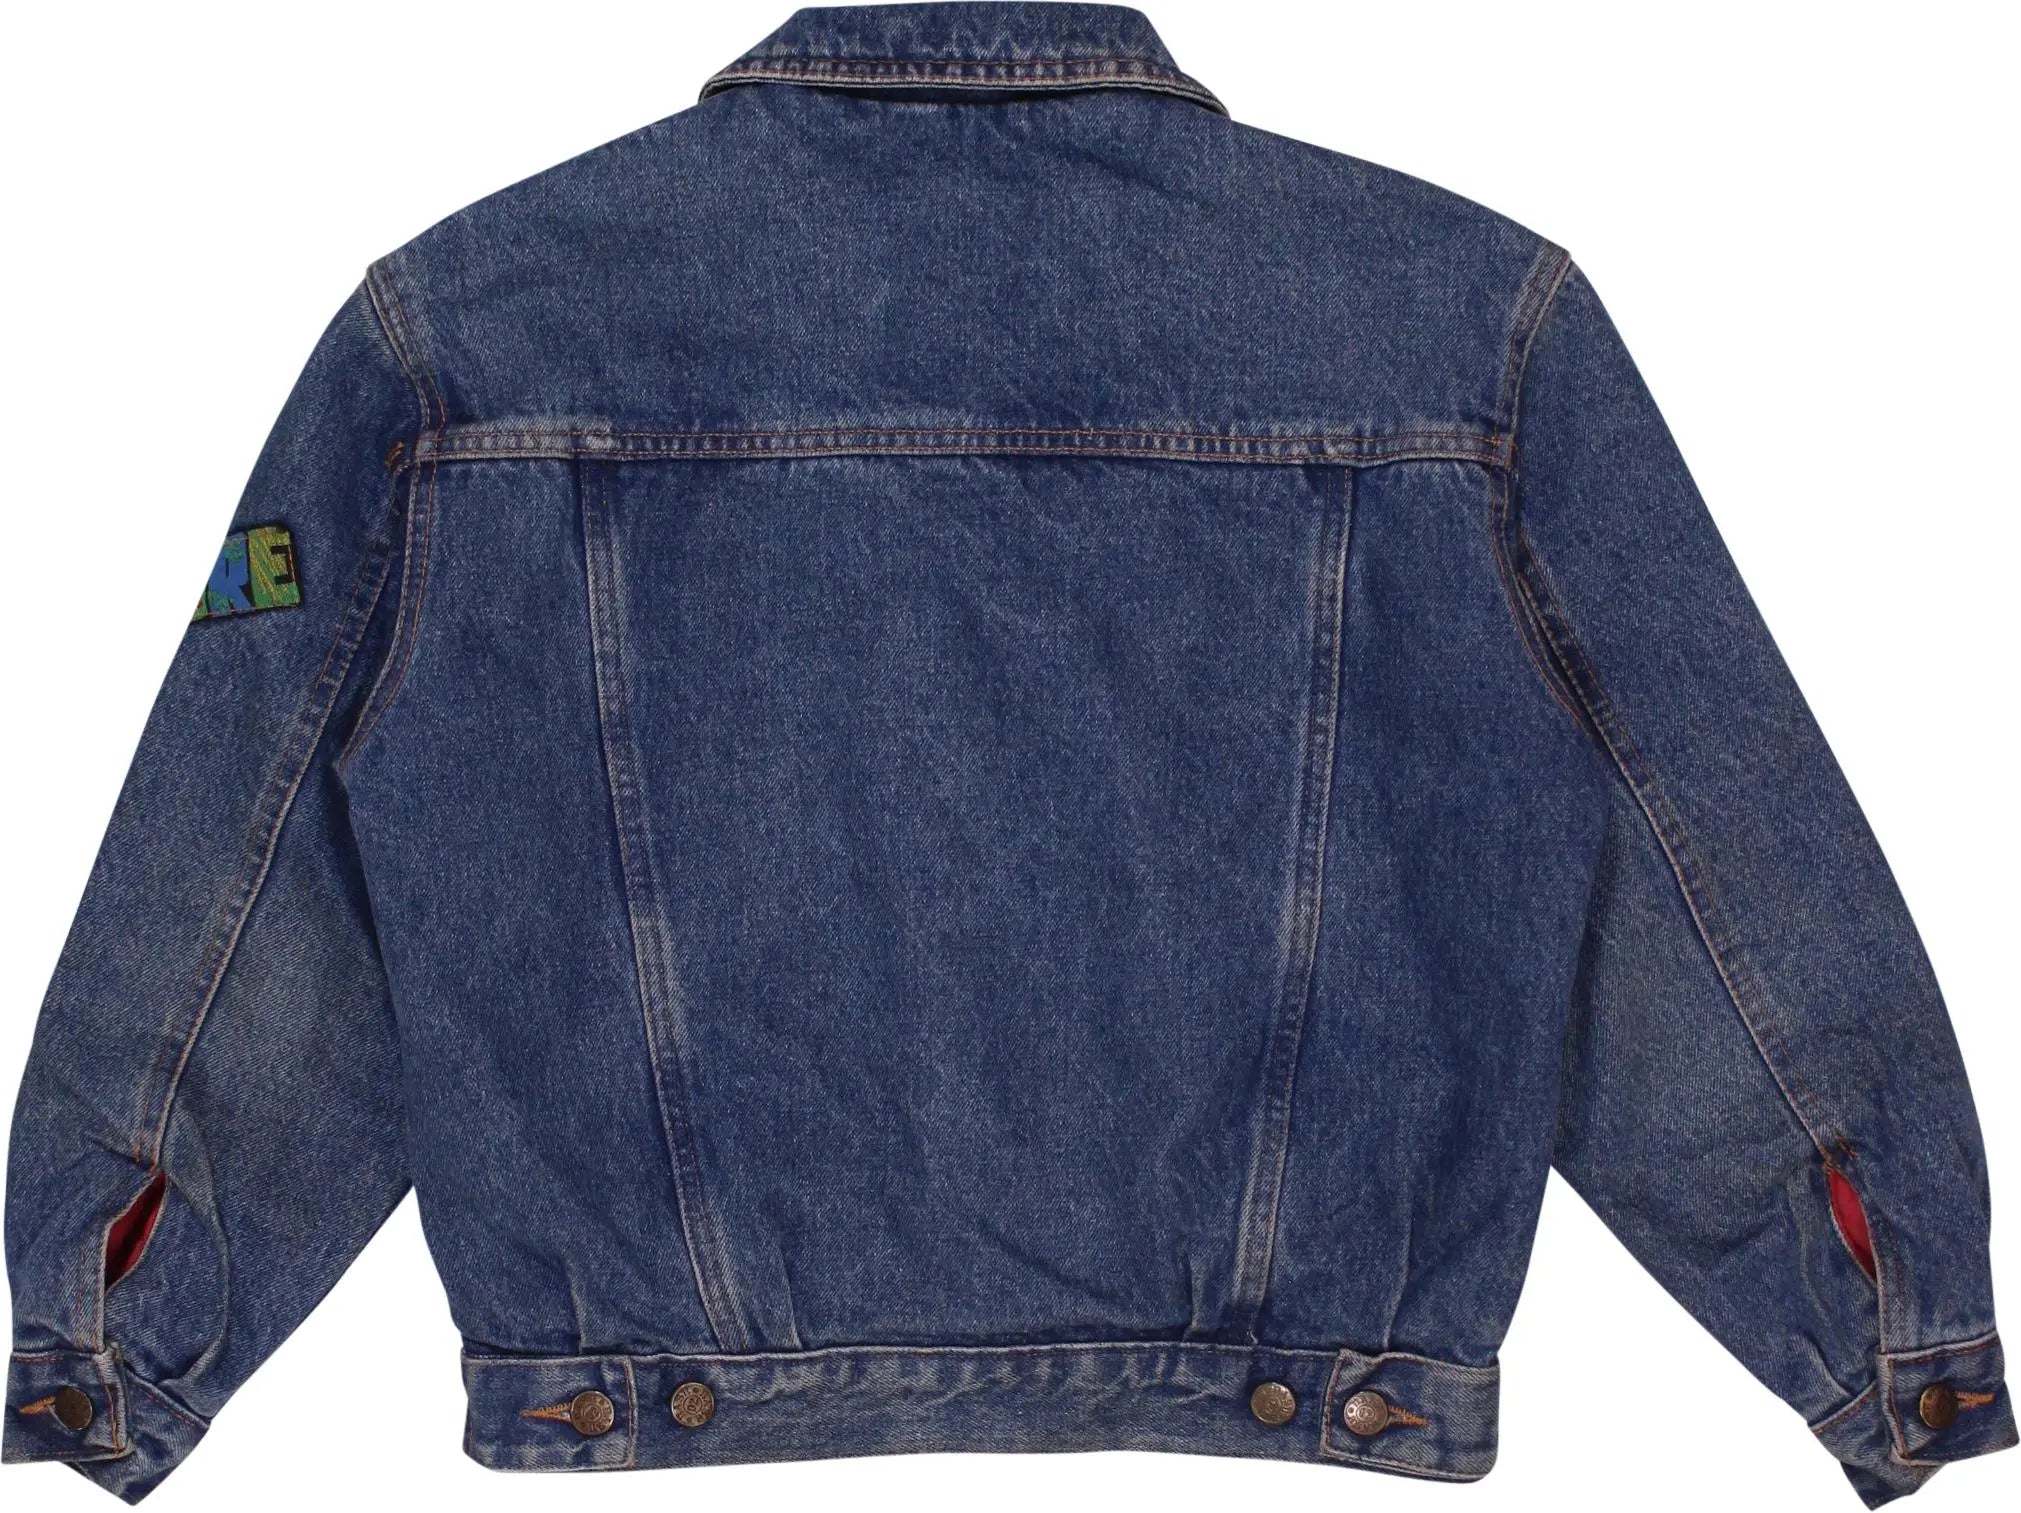 Base 92 - Blue Denim Jacket- ThriftTale.com - Vintage and second handclothing